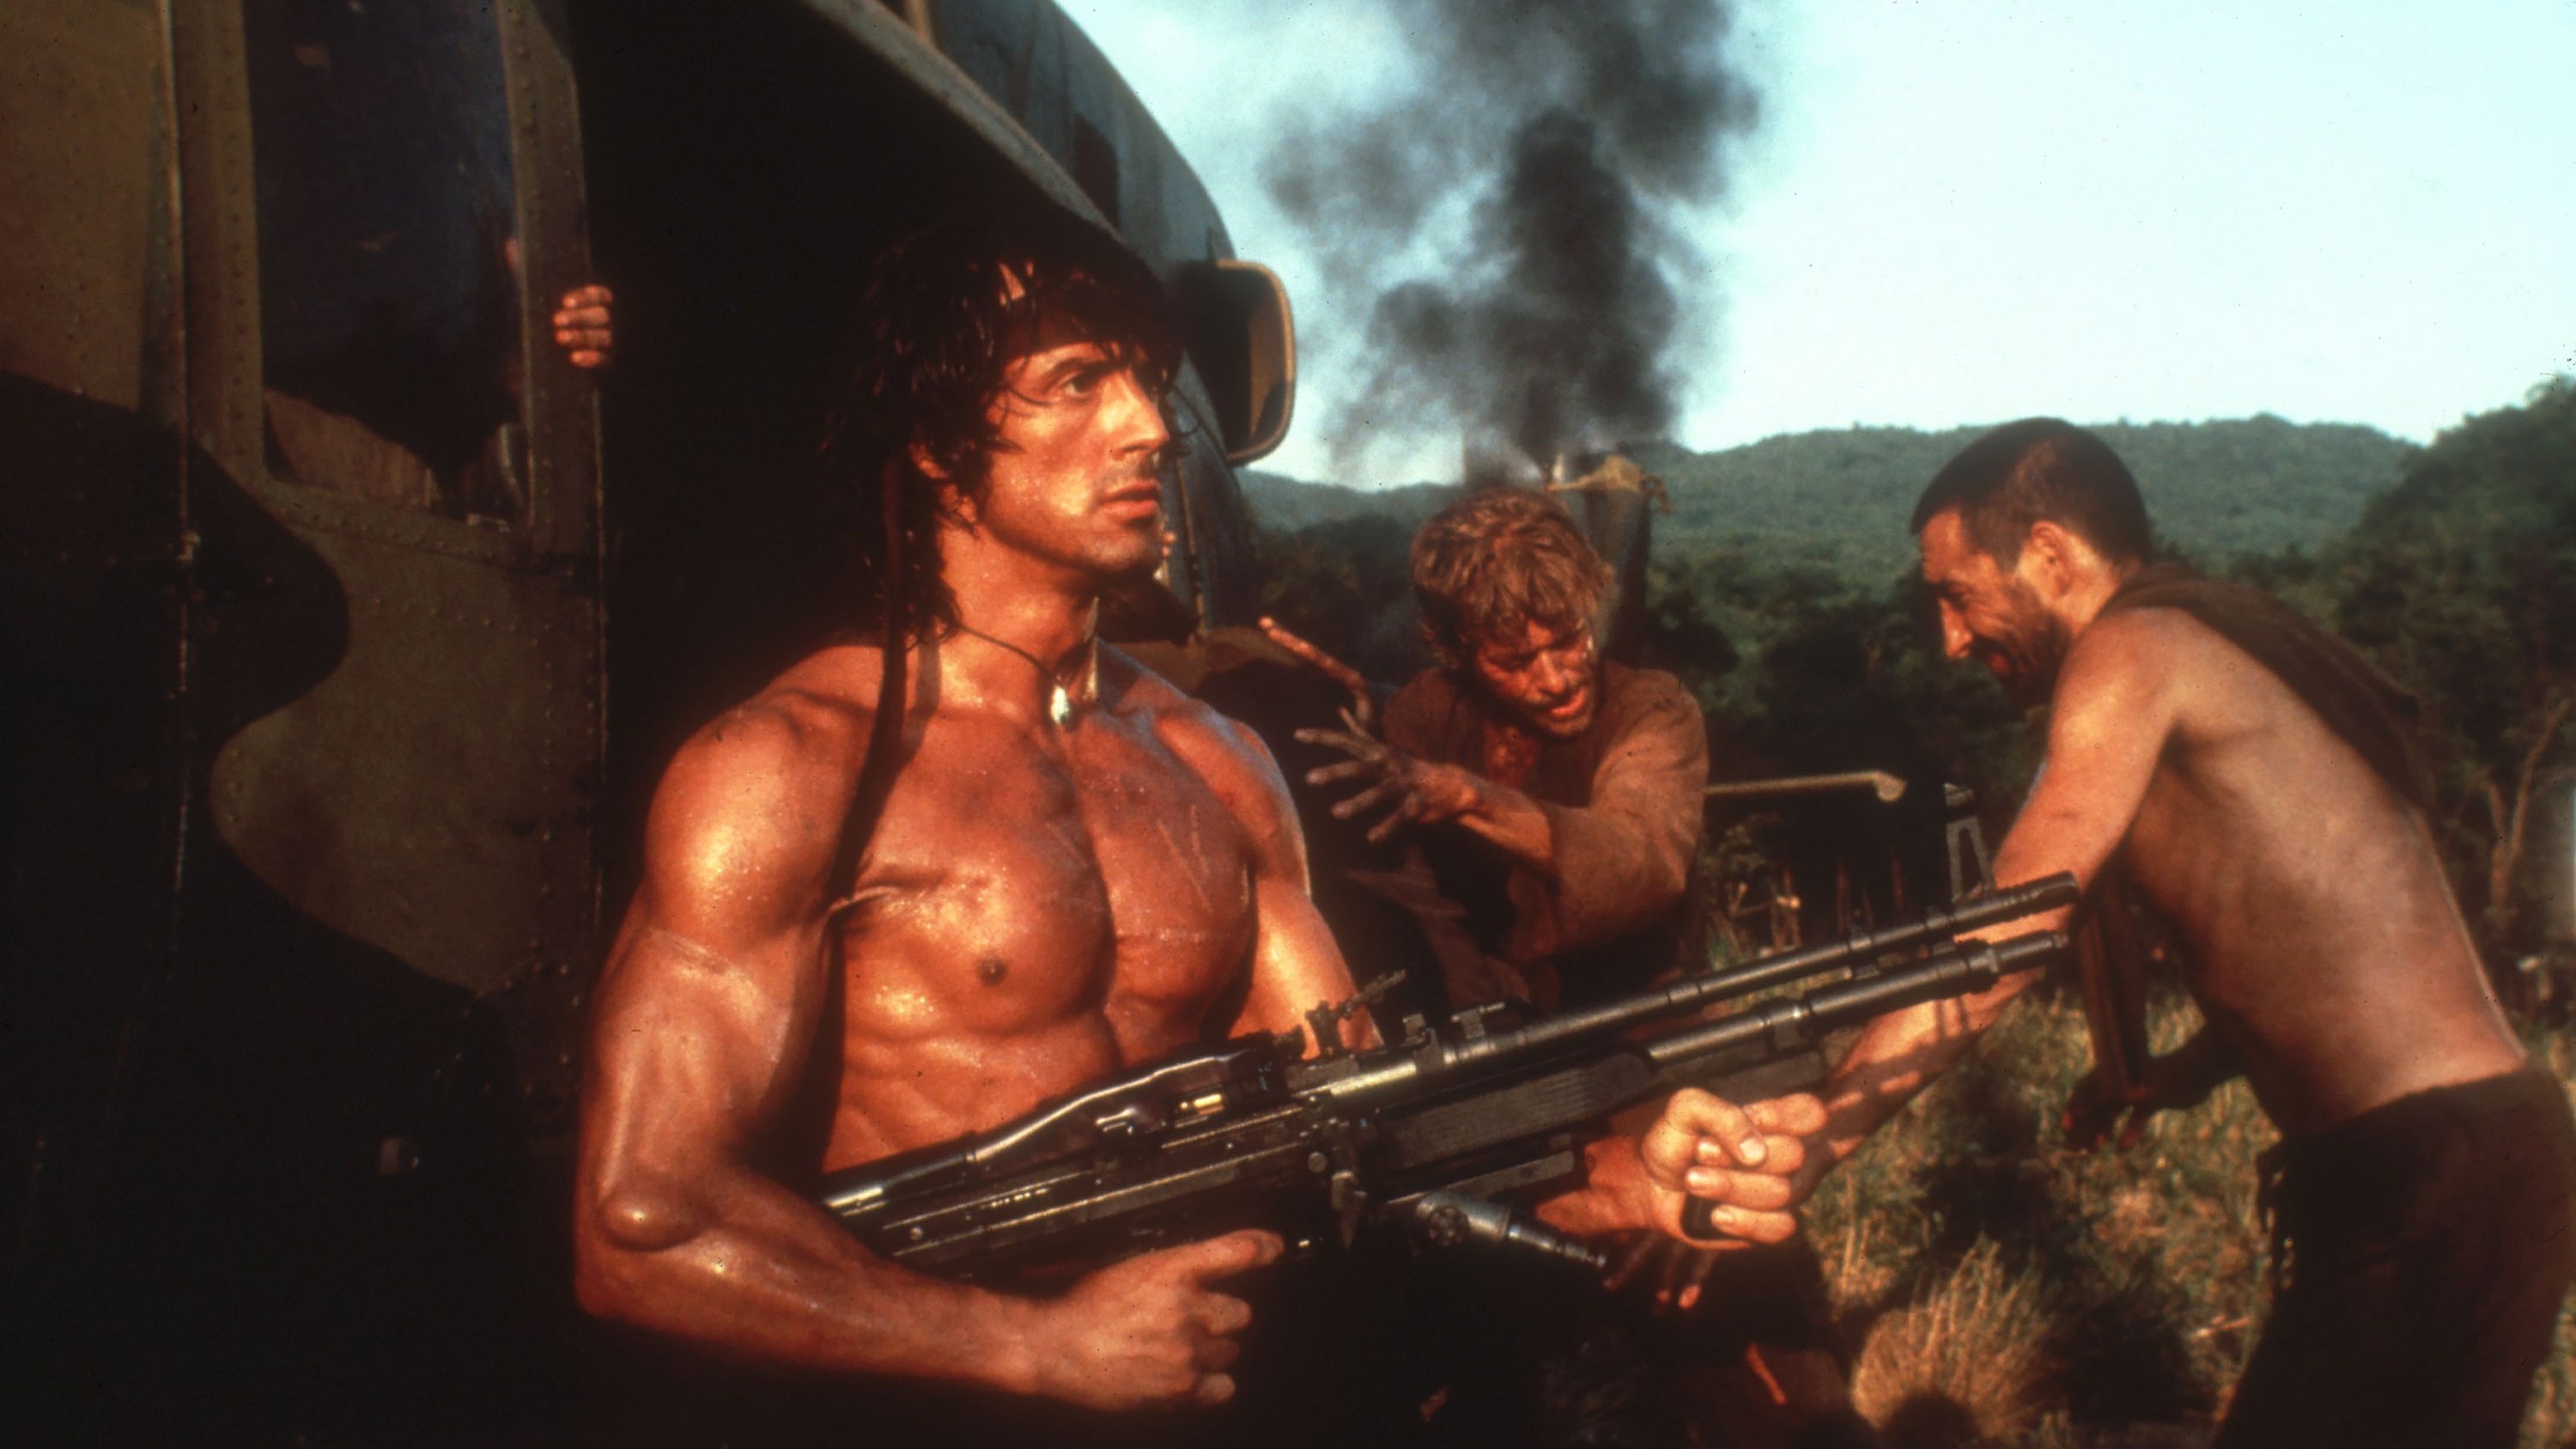 Rambo II : La Mission (1985)